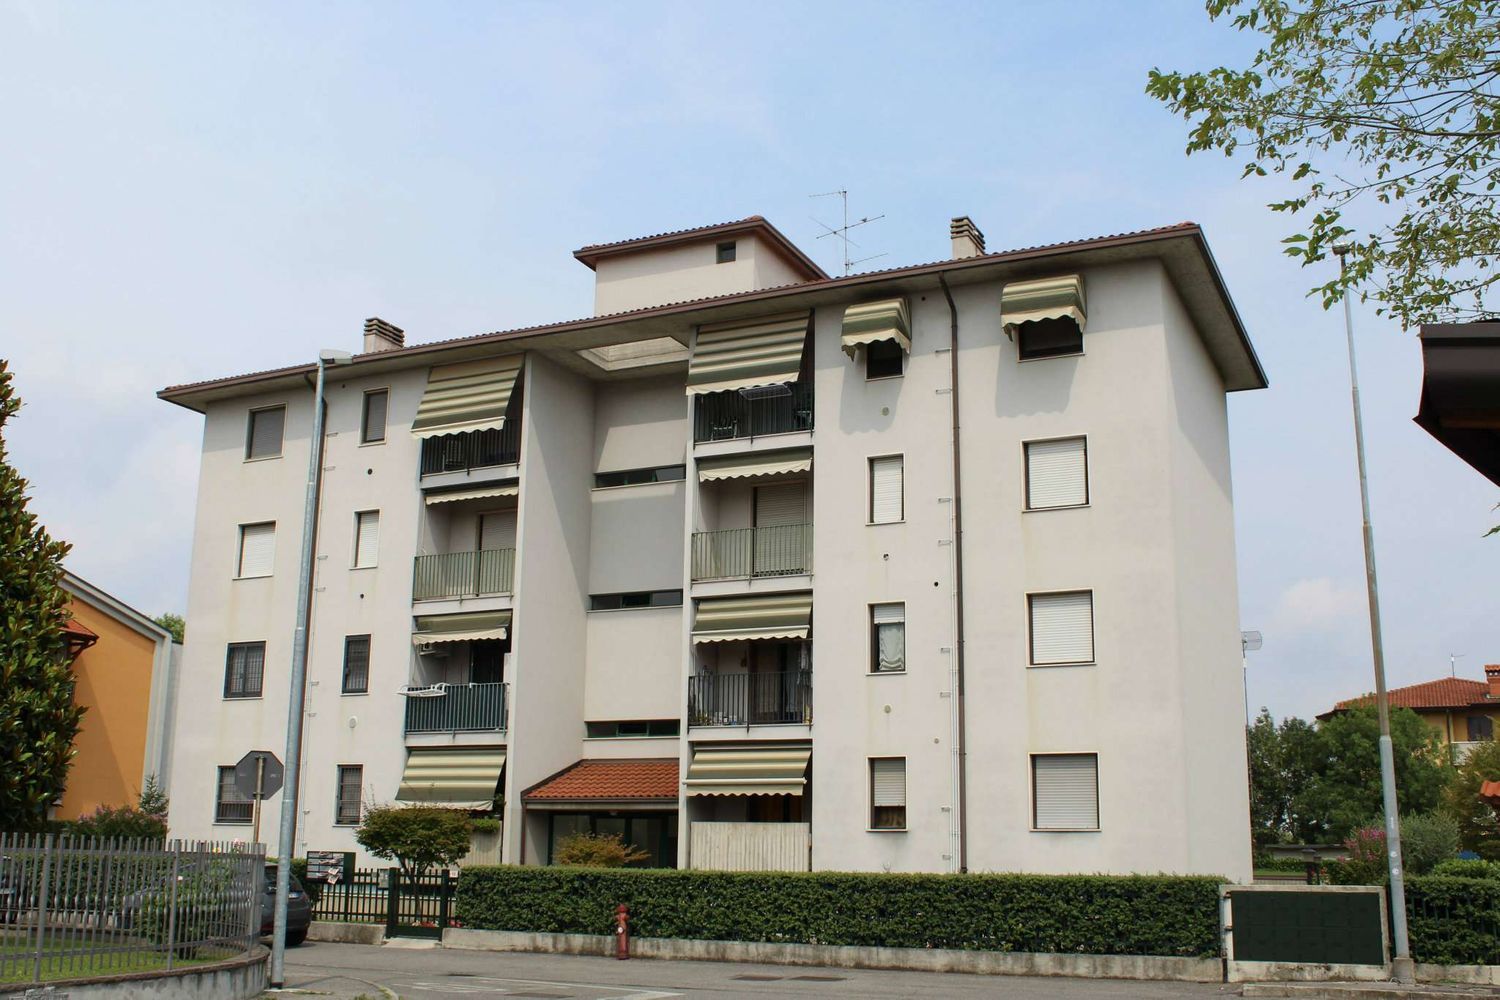 Appartamento in vendita a Arcene, 3 locali, prezzo € 76.000 | CambioCasa.it